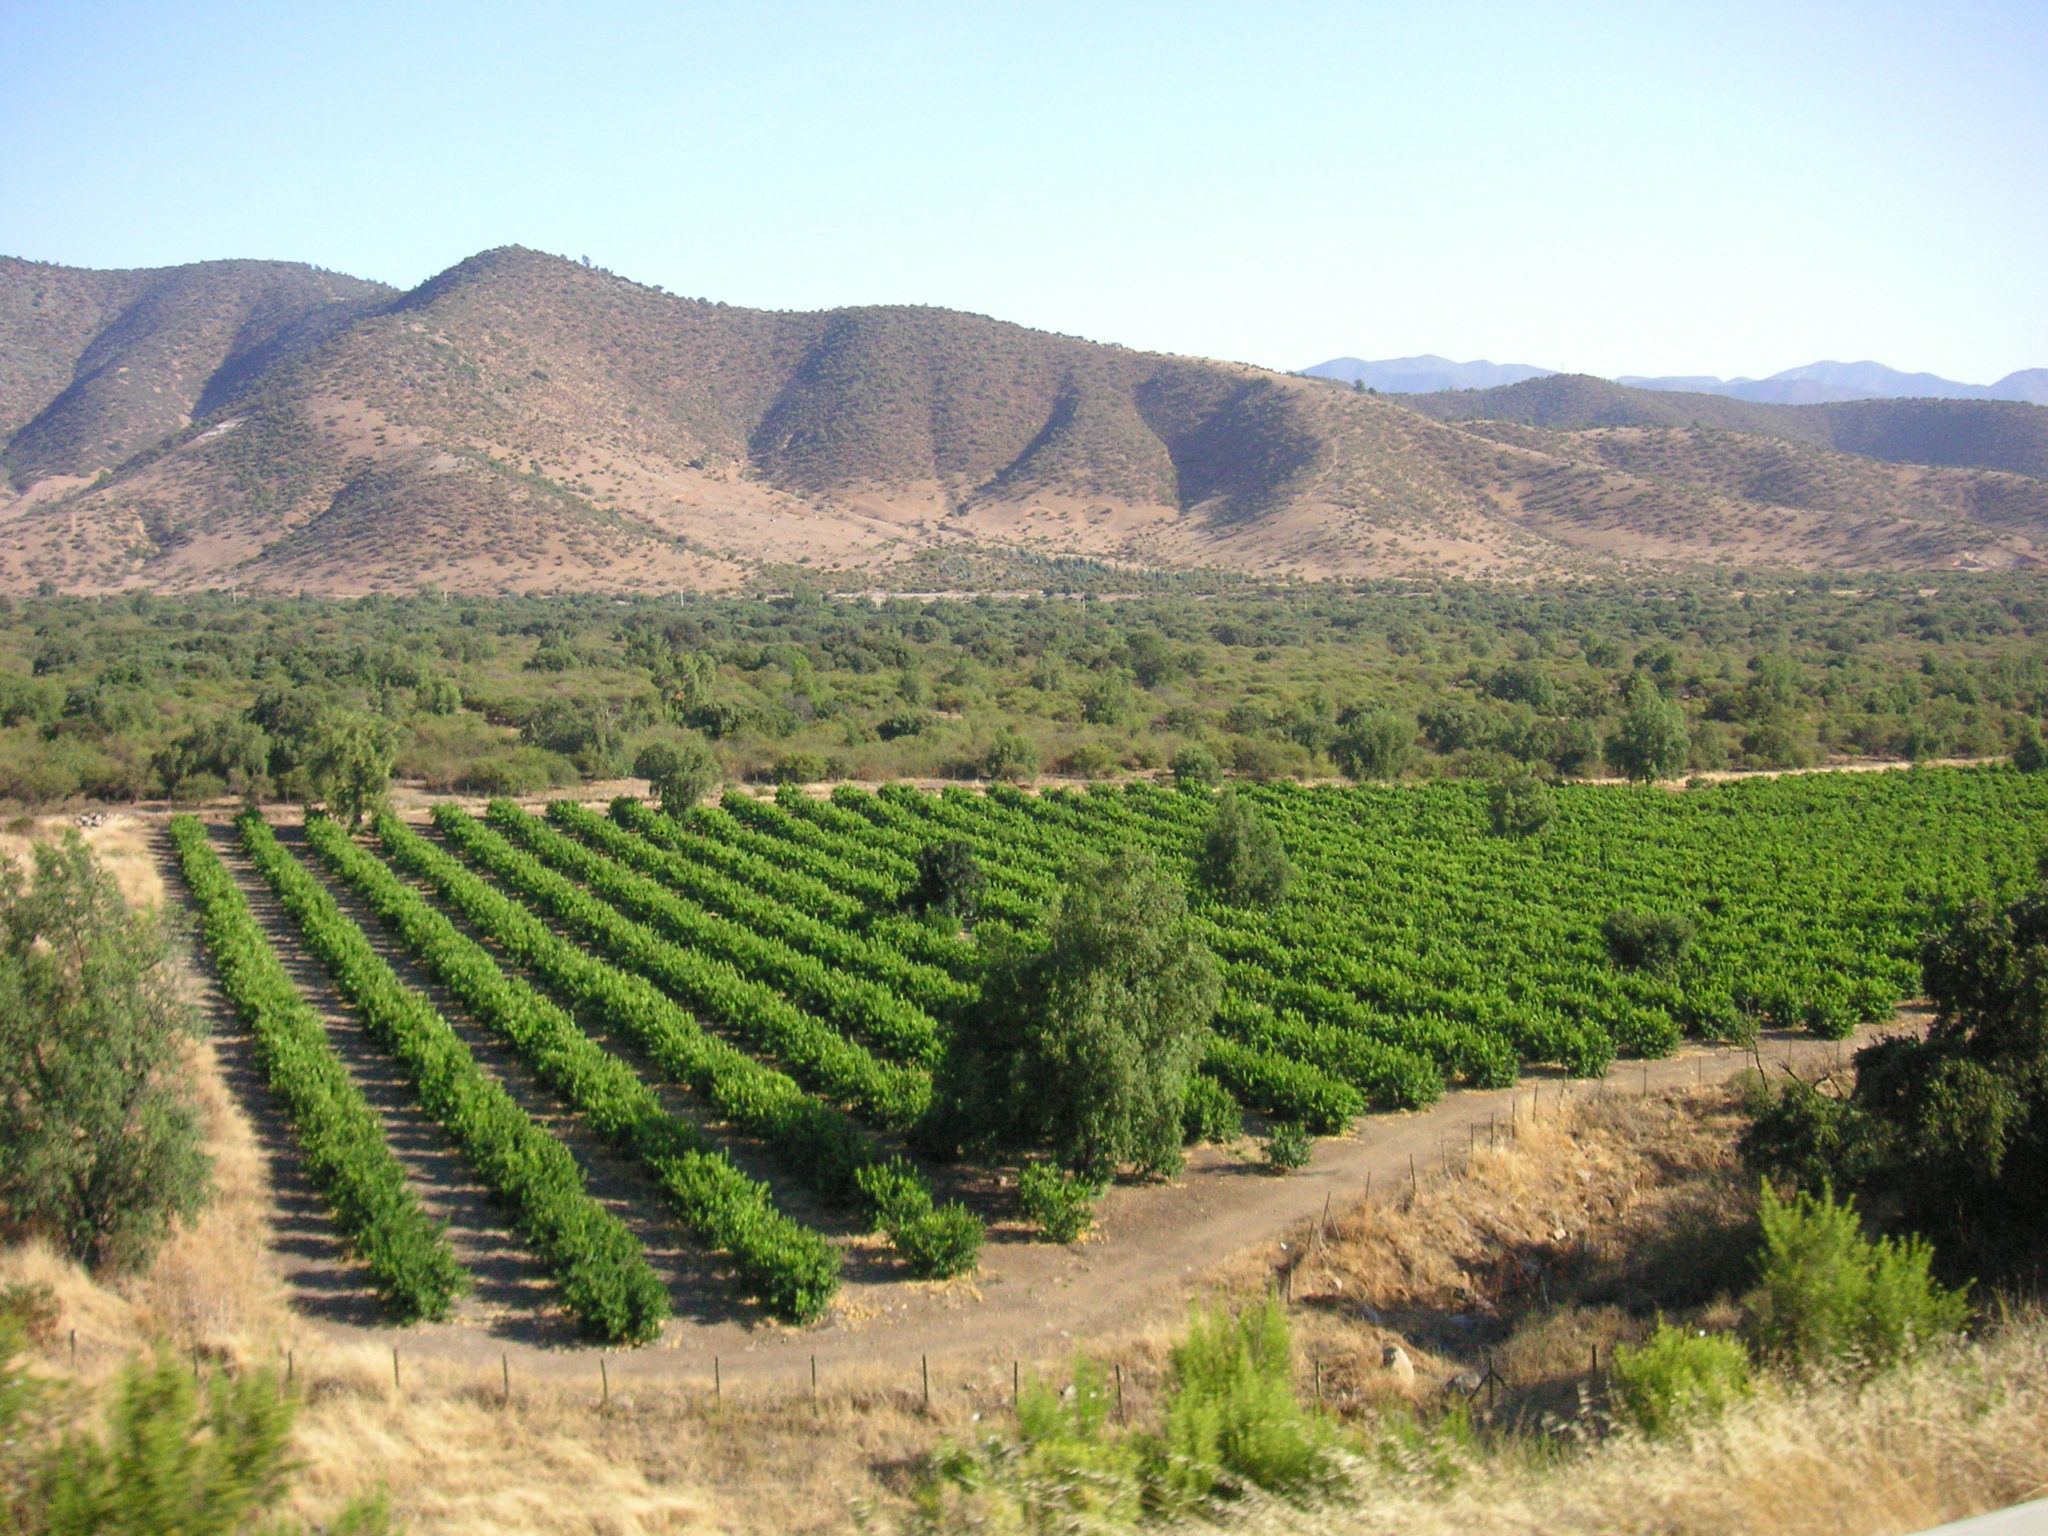 Ο τύπος του εδάφους όπου καλλιεργούνται τα σταφύλια είναι ένας άλλος σημαντικός παράγοντας για τις καλύτερες επενδύσεις σε κρασί το 2022 και το 2023.